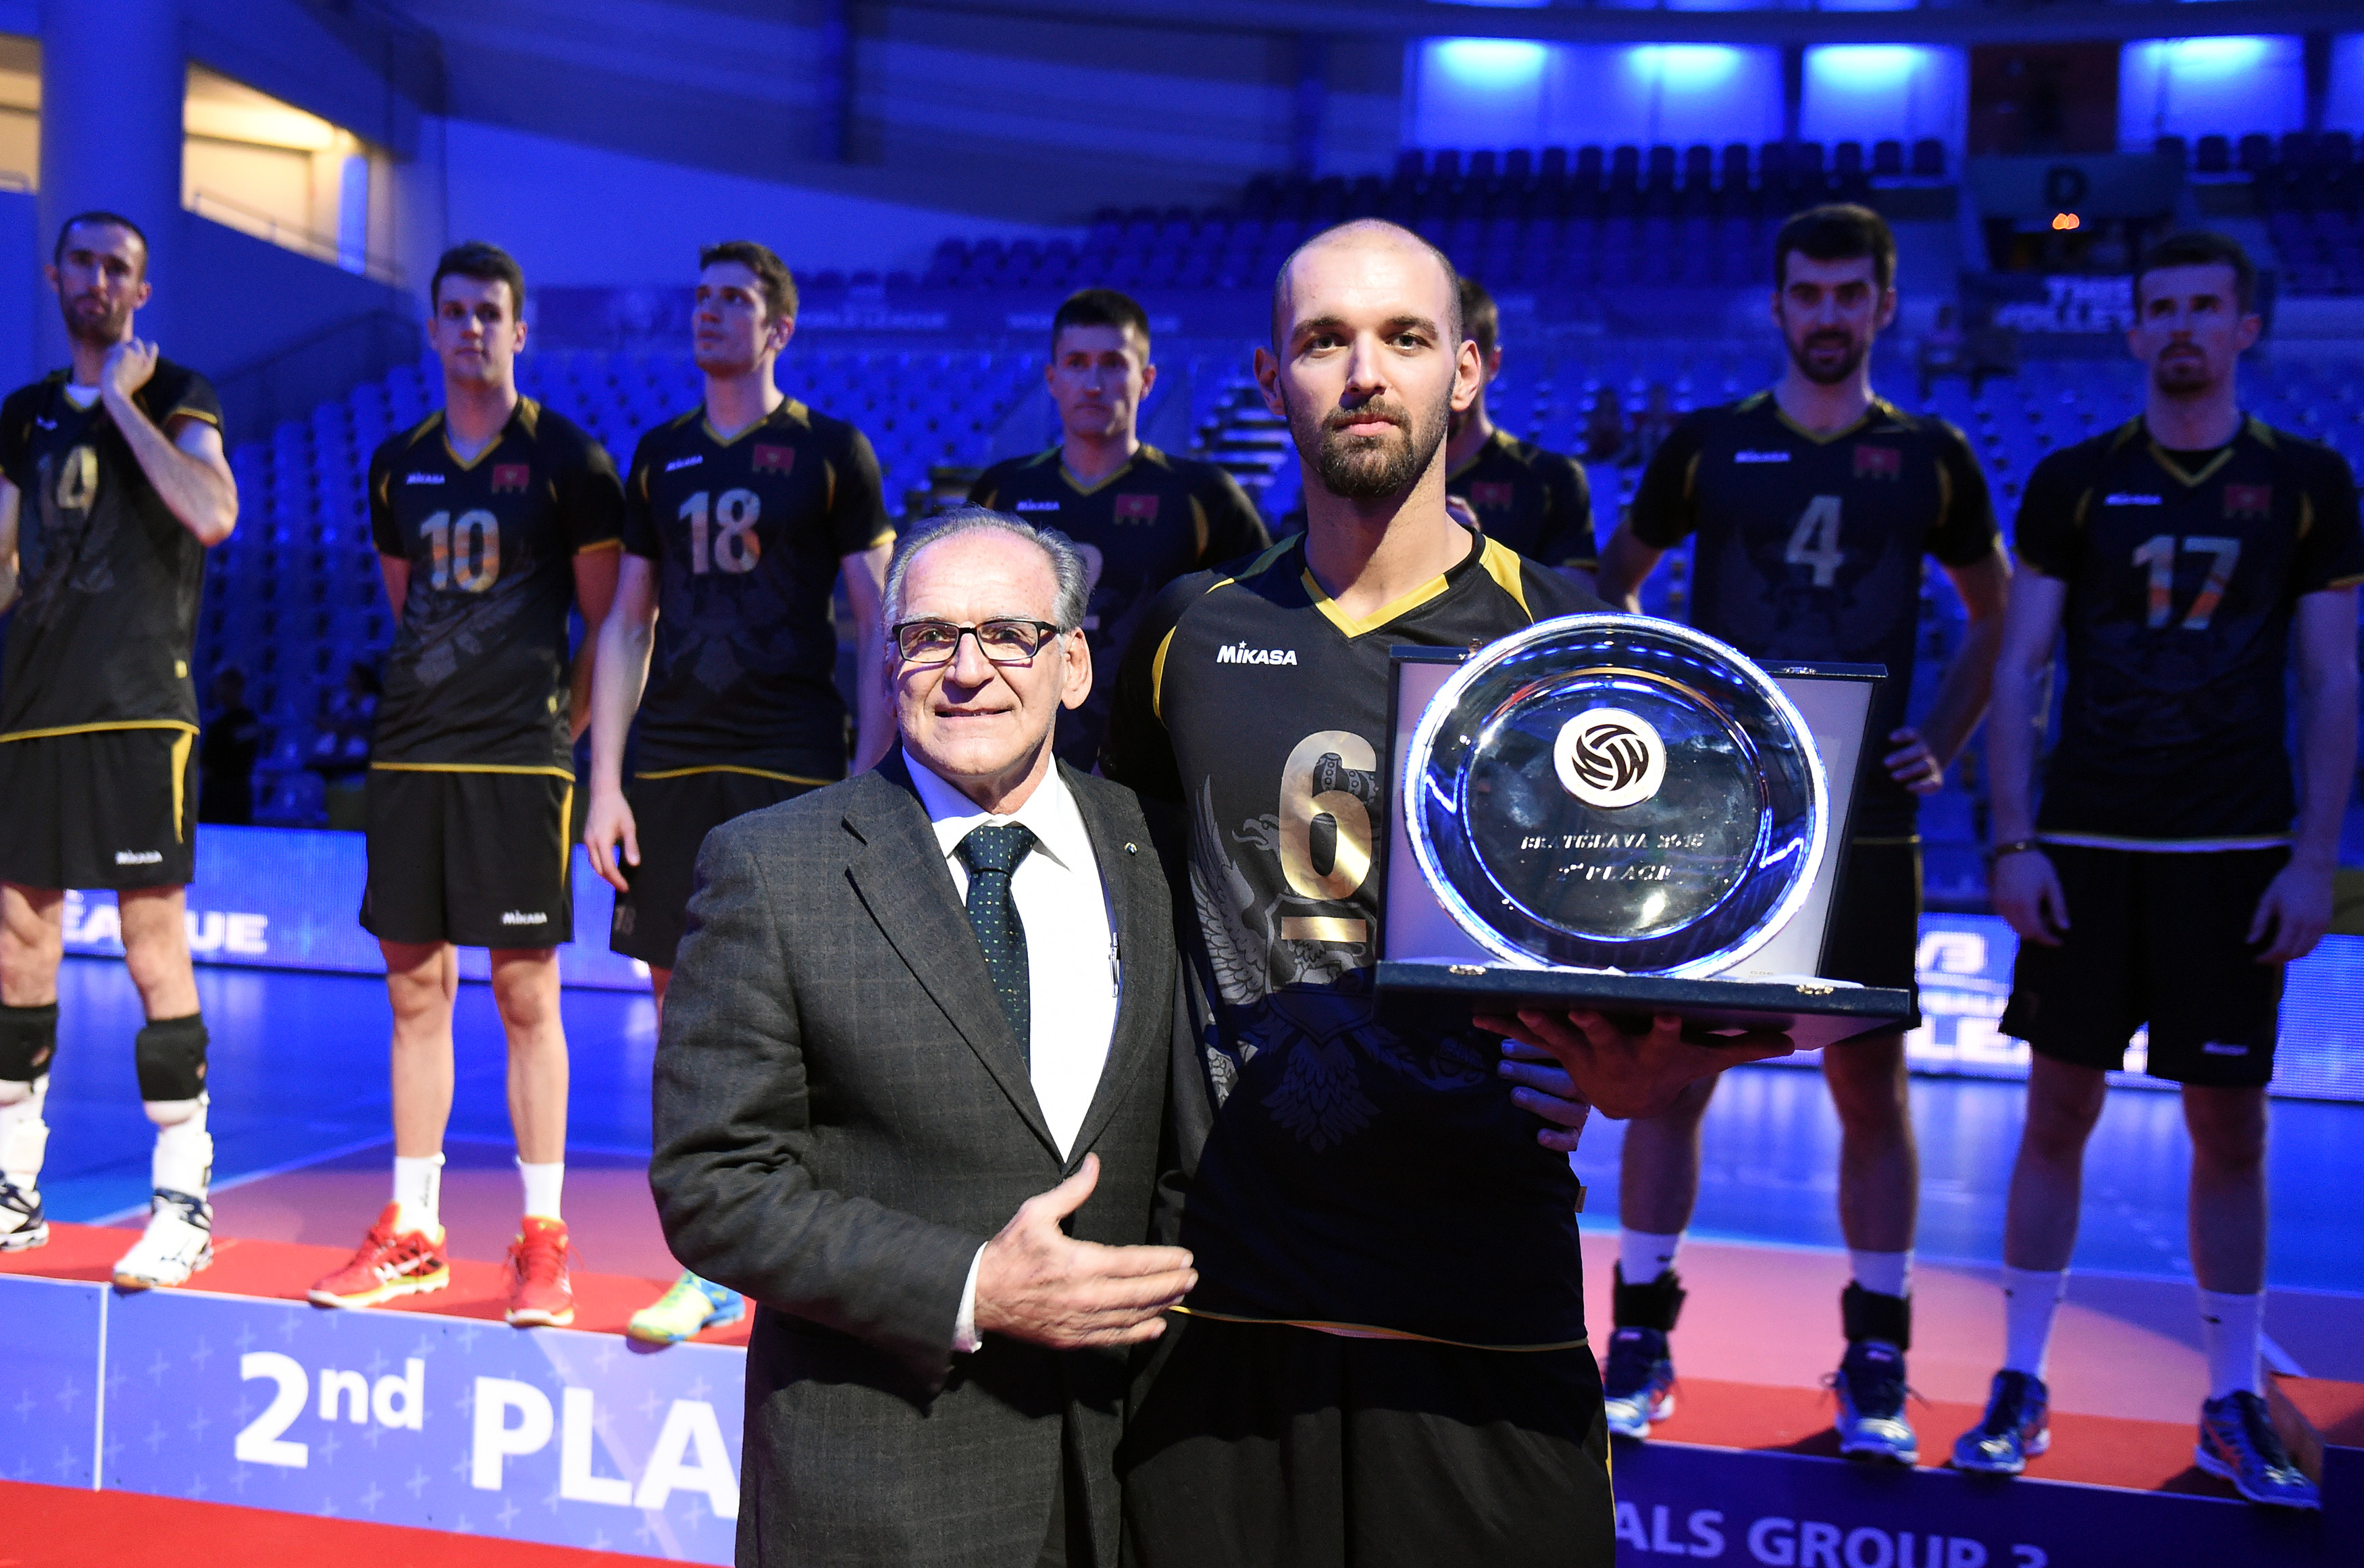 vojin cacic prima nagradu odbojka crna gora svjetska liga volleyball montenegro